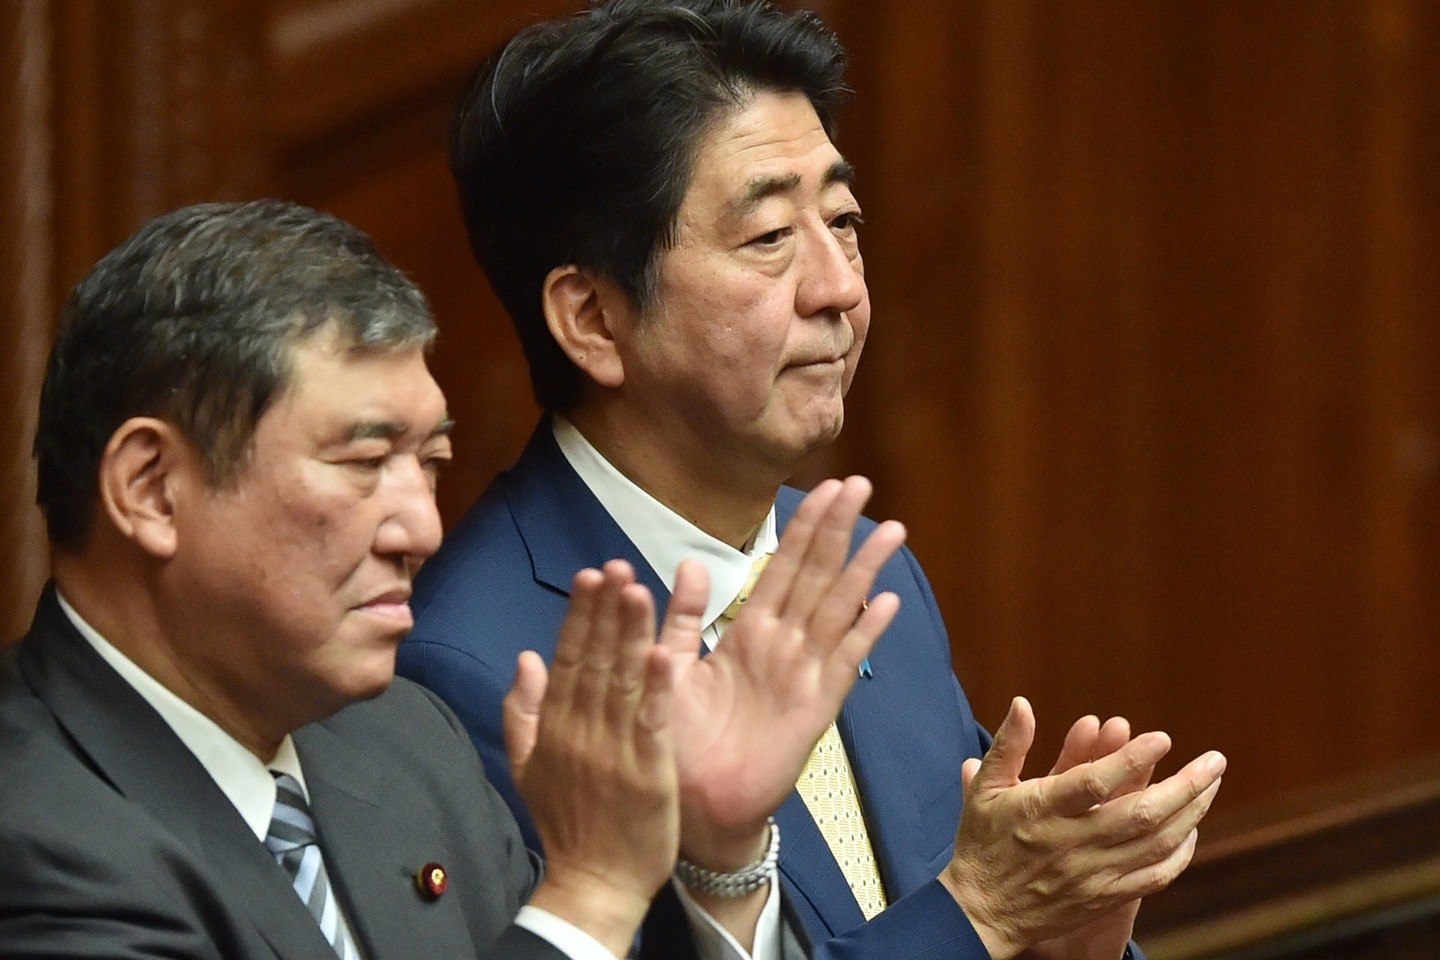 Apklausos rodo, kad visuomenės dauguma nusistačiusi prieš naujuosius teisės aktus, o Sh.Abe populiarumas blėsta.<br>AFP/“Scanpix“ nuotr.